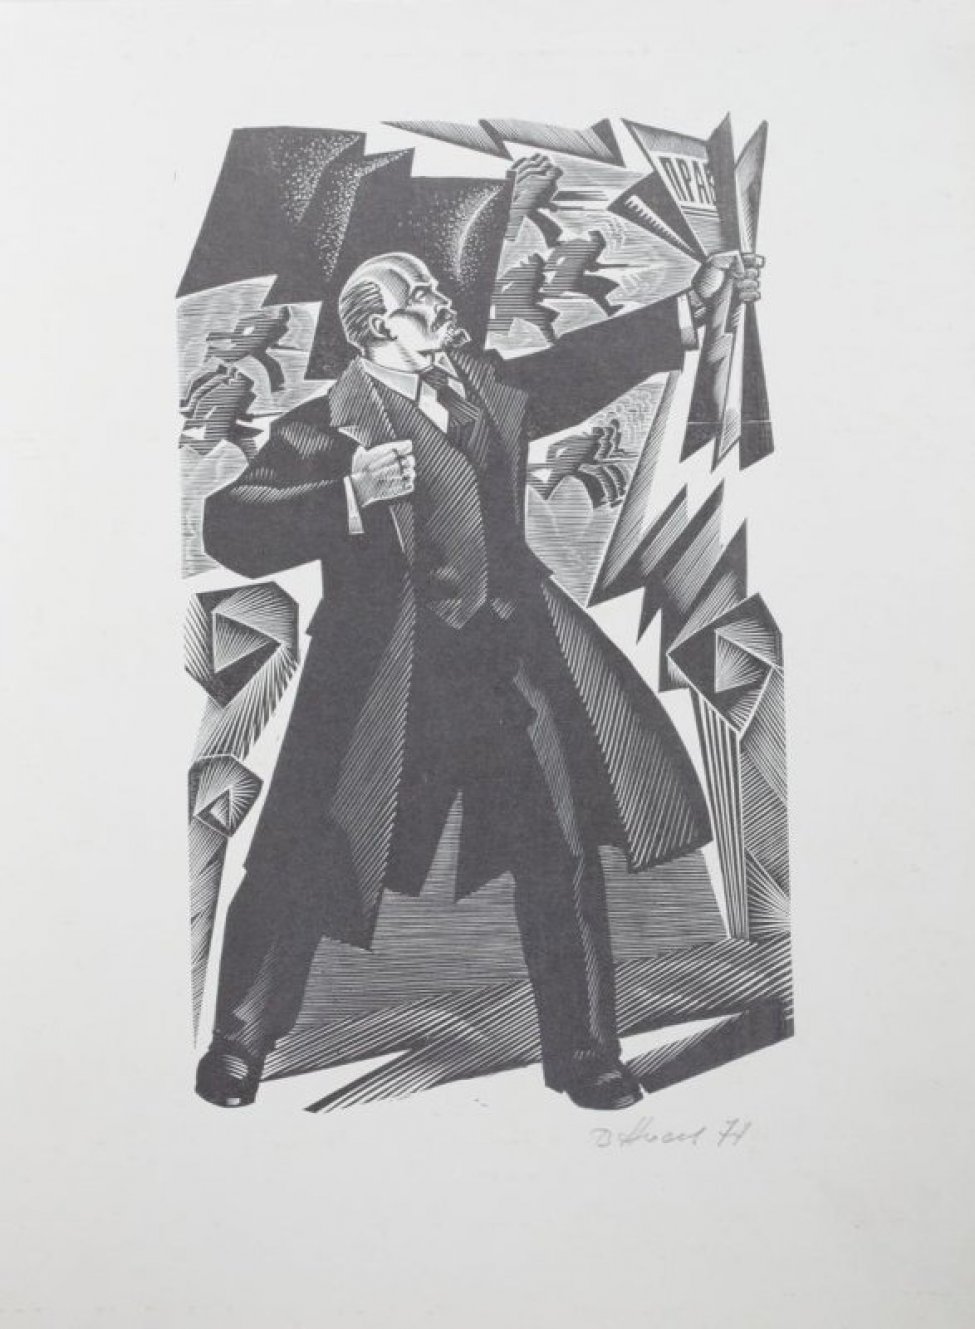 Изображен В.И.Ленин в рост. Полы пальто распахнуты, в левой вытянутой вперед руке газета "Правда".